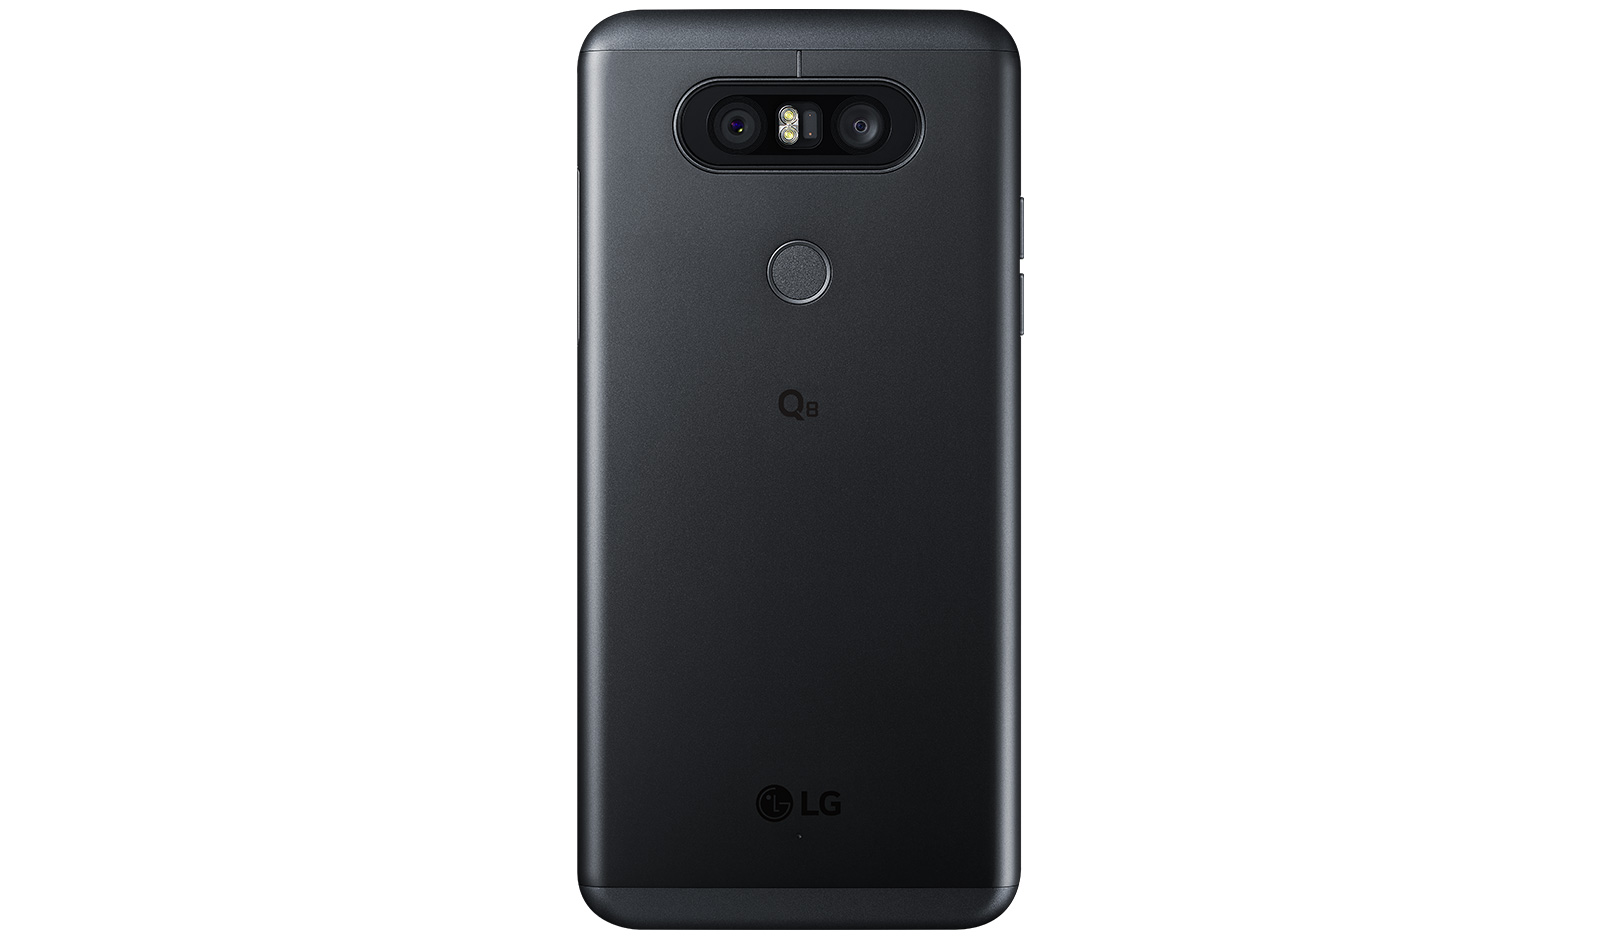 Immagine pubblicata in relazione al seguente contenuto: LG lancia lo smartphone Q8 con Snapdragon 820 e display IPS Quantum | Nome immagine: news26720_LG-Q8_2.jpg